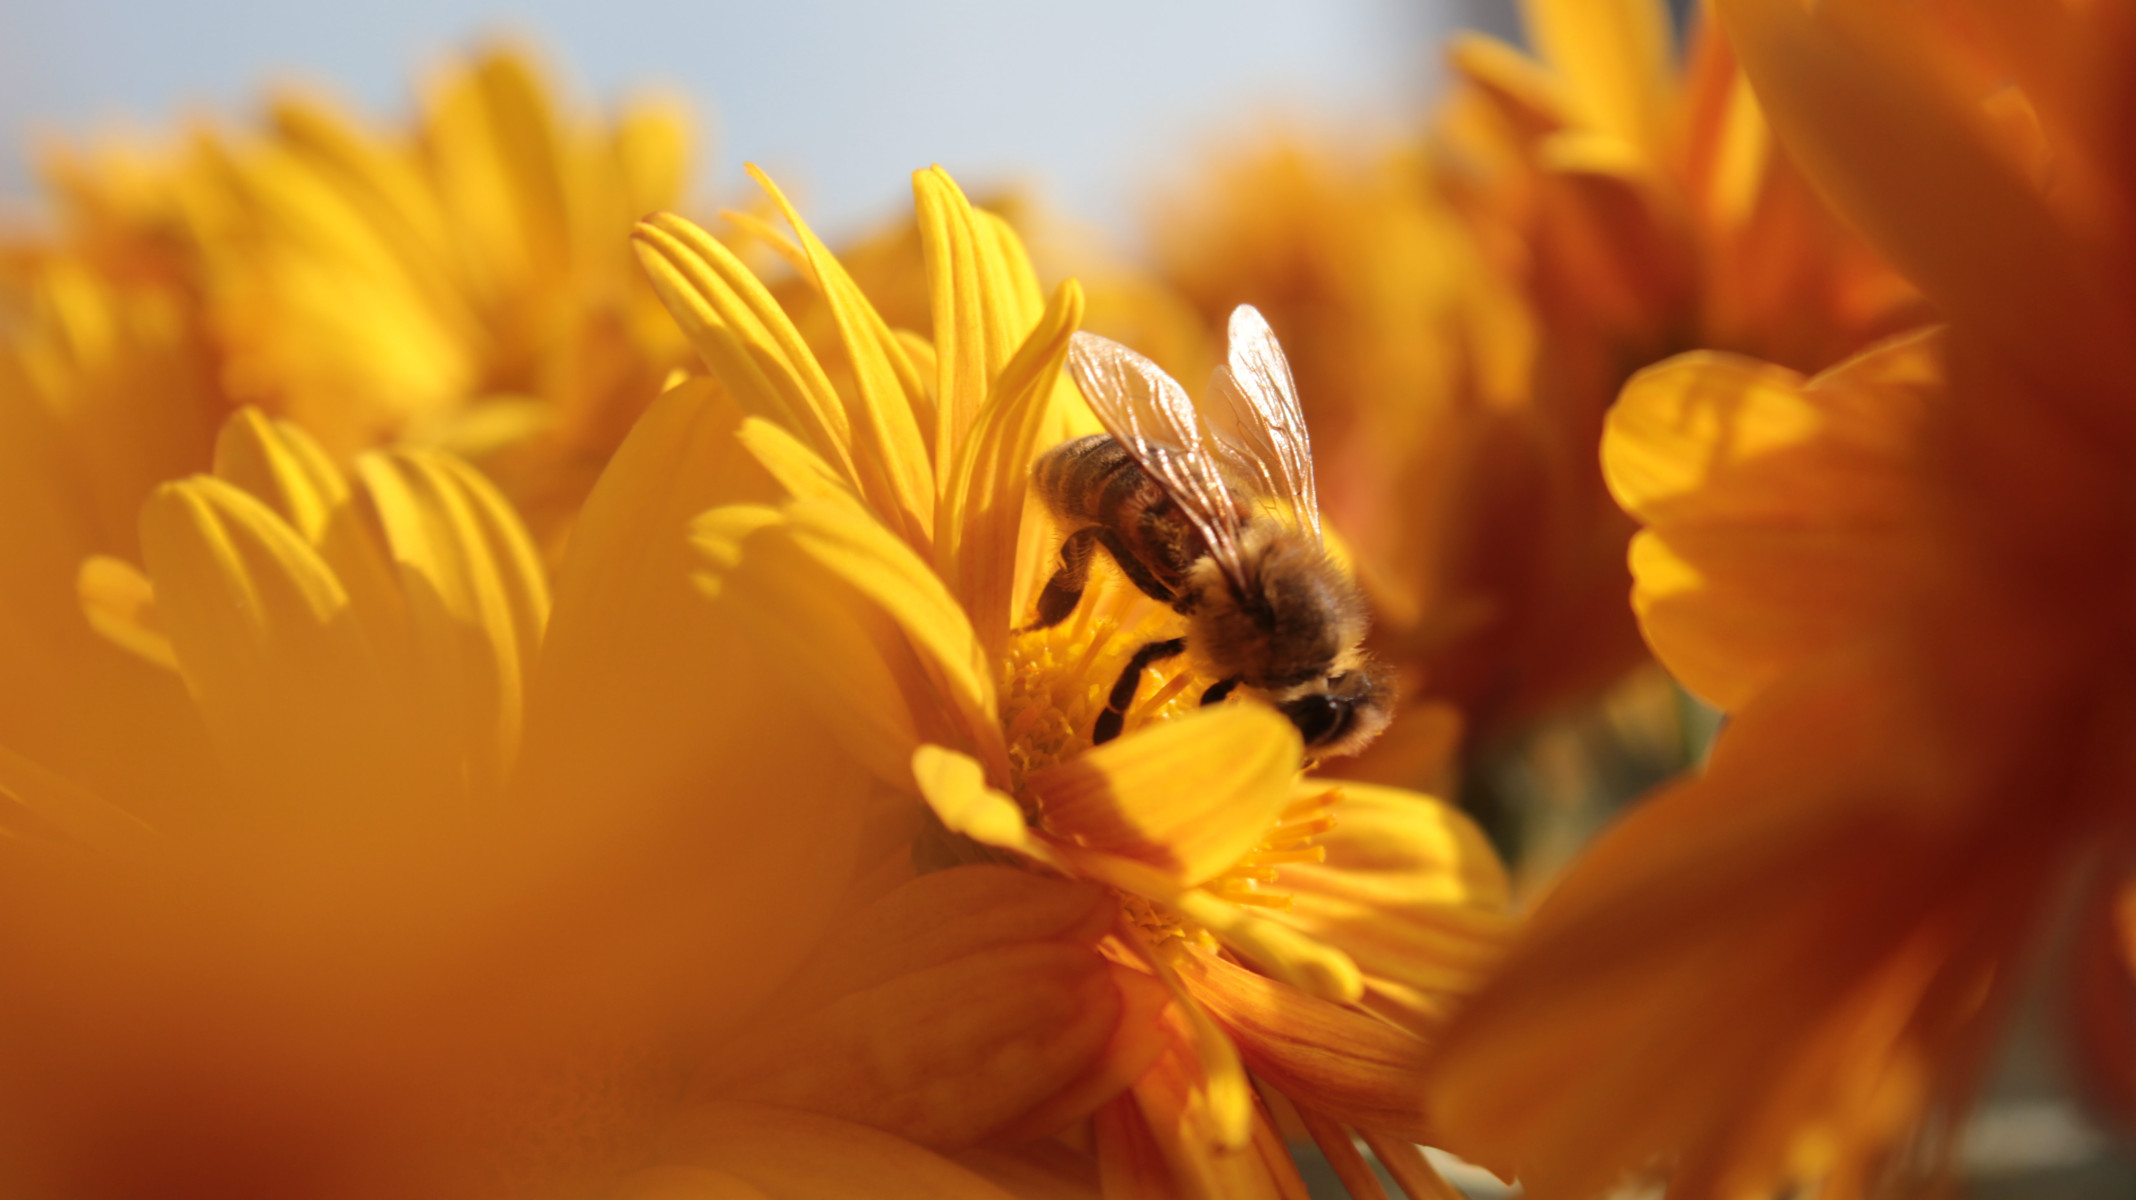 Čebele rade prebivajo v Einparku